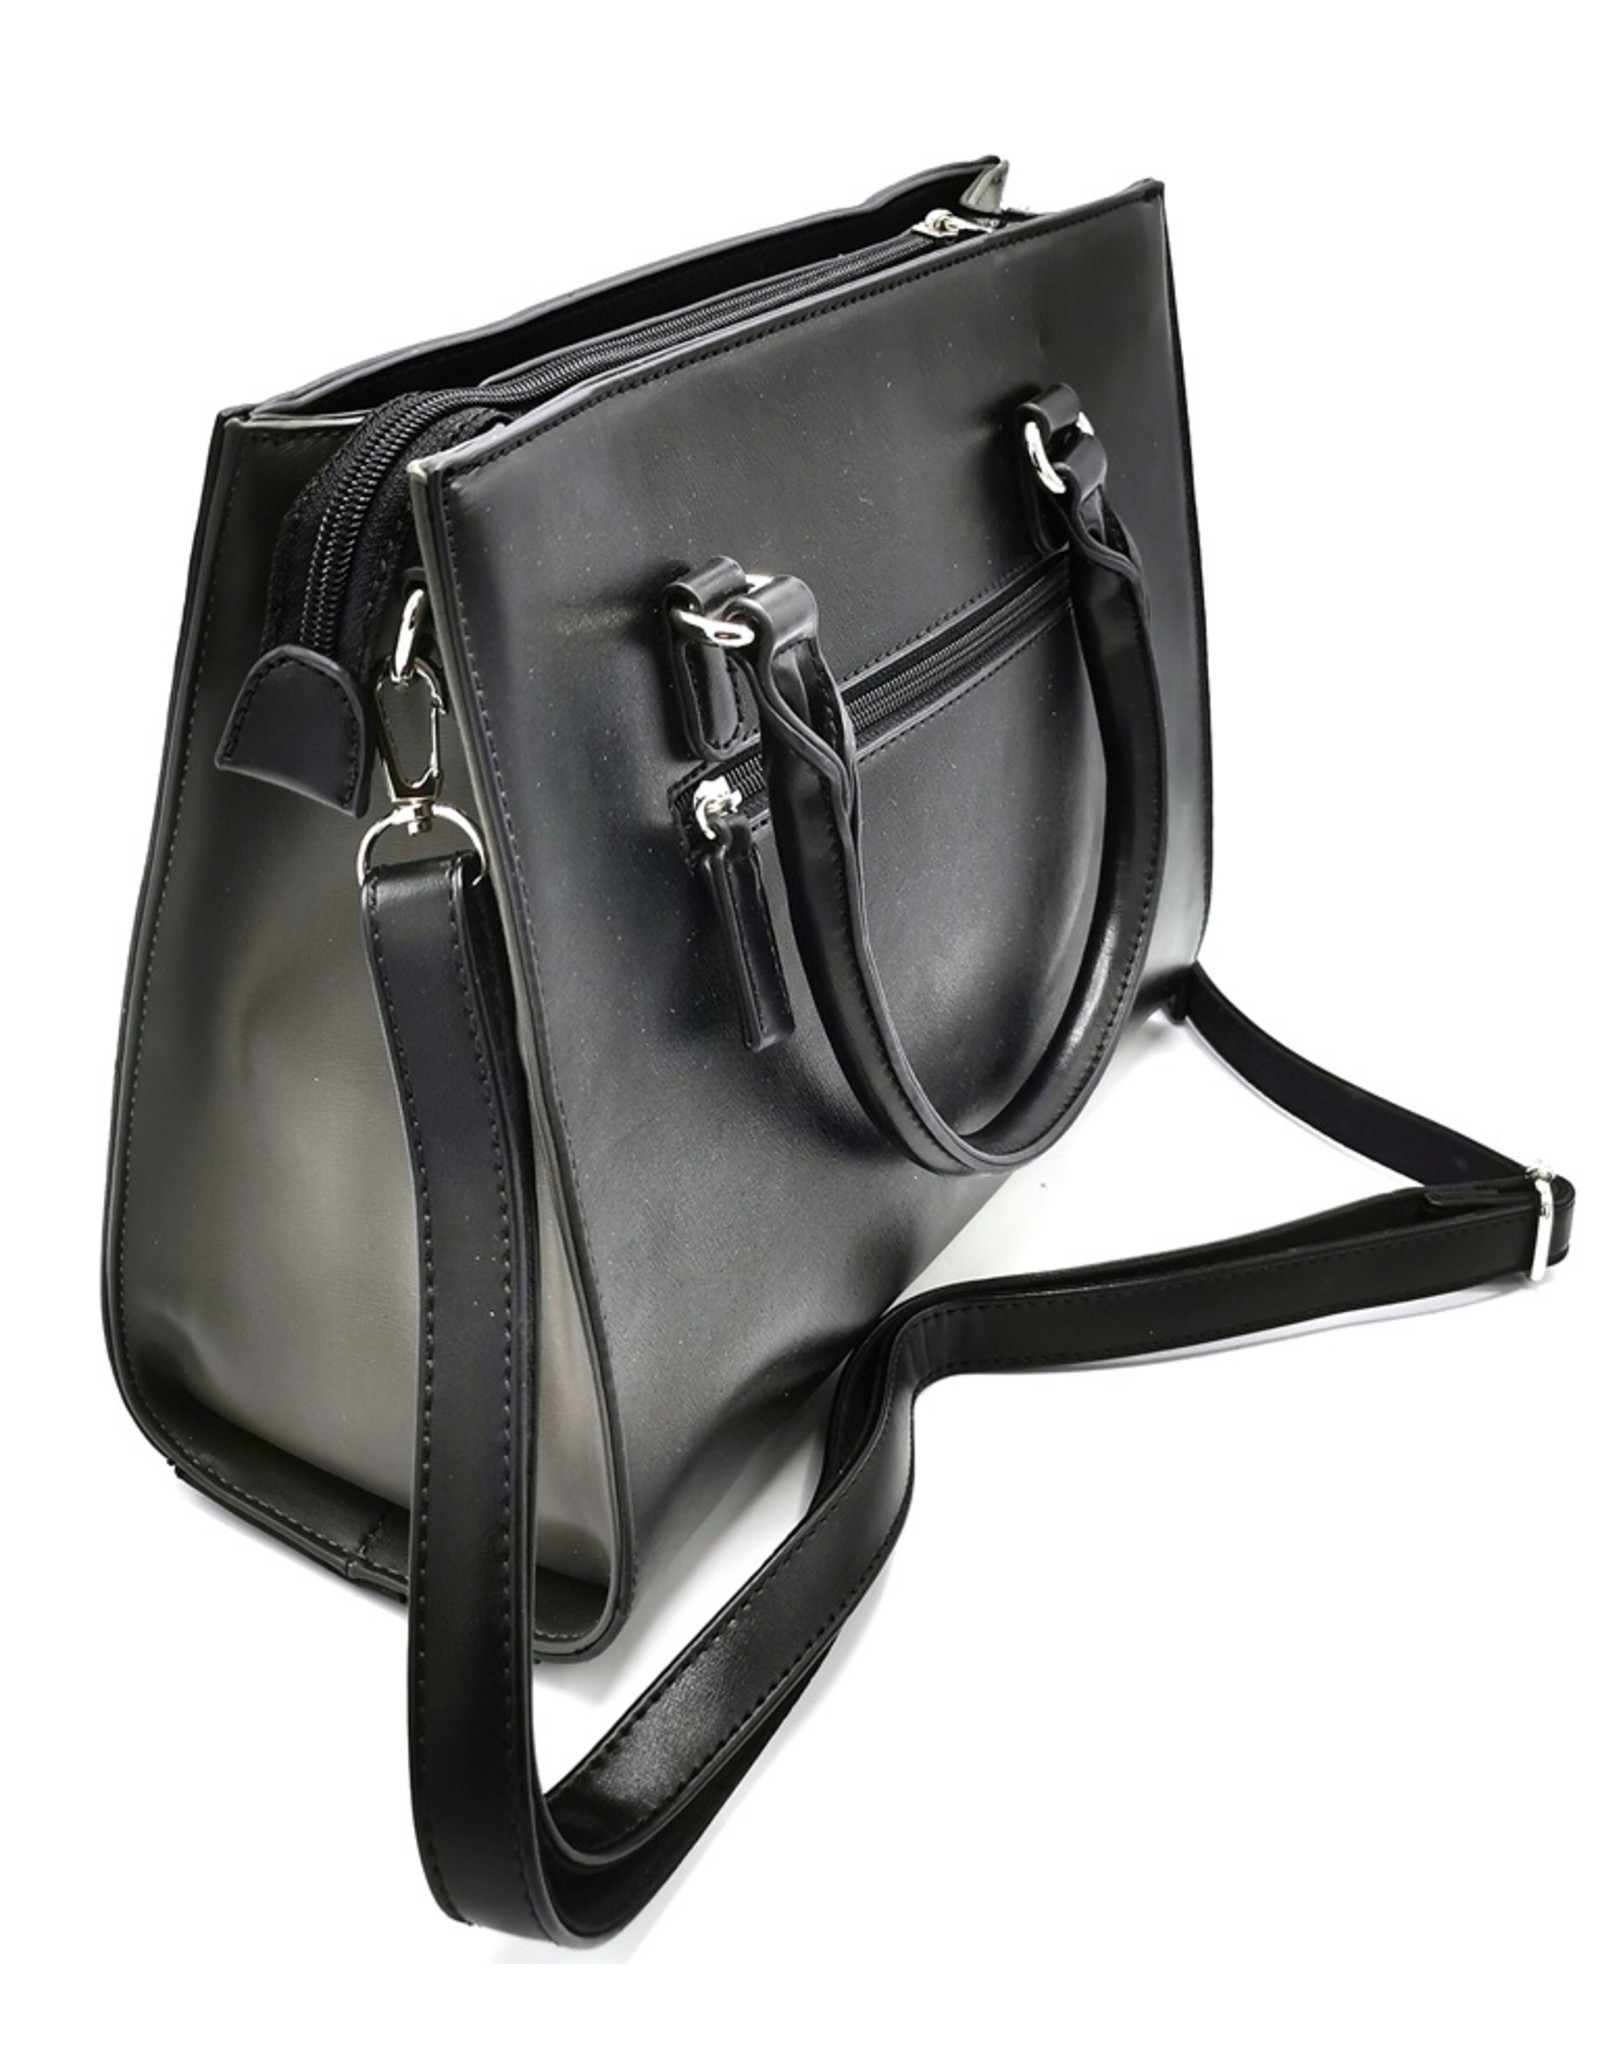 David Jones Fashion bags - David Jones Handbag Black-Grey